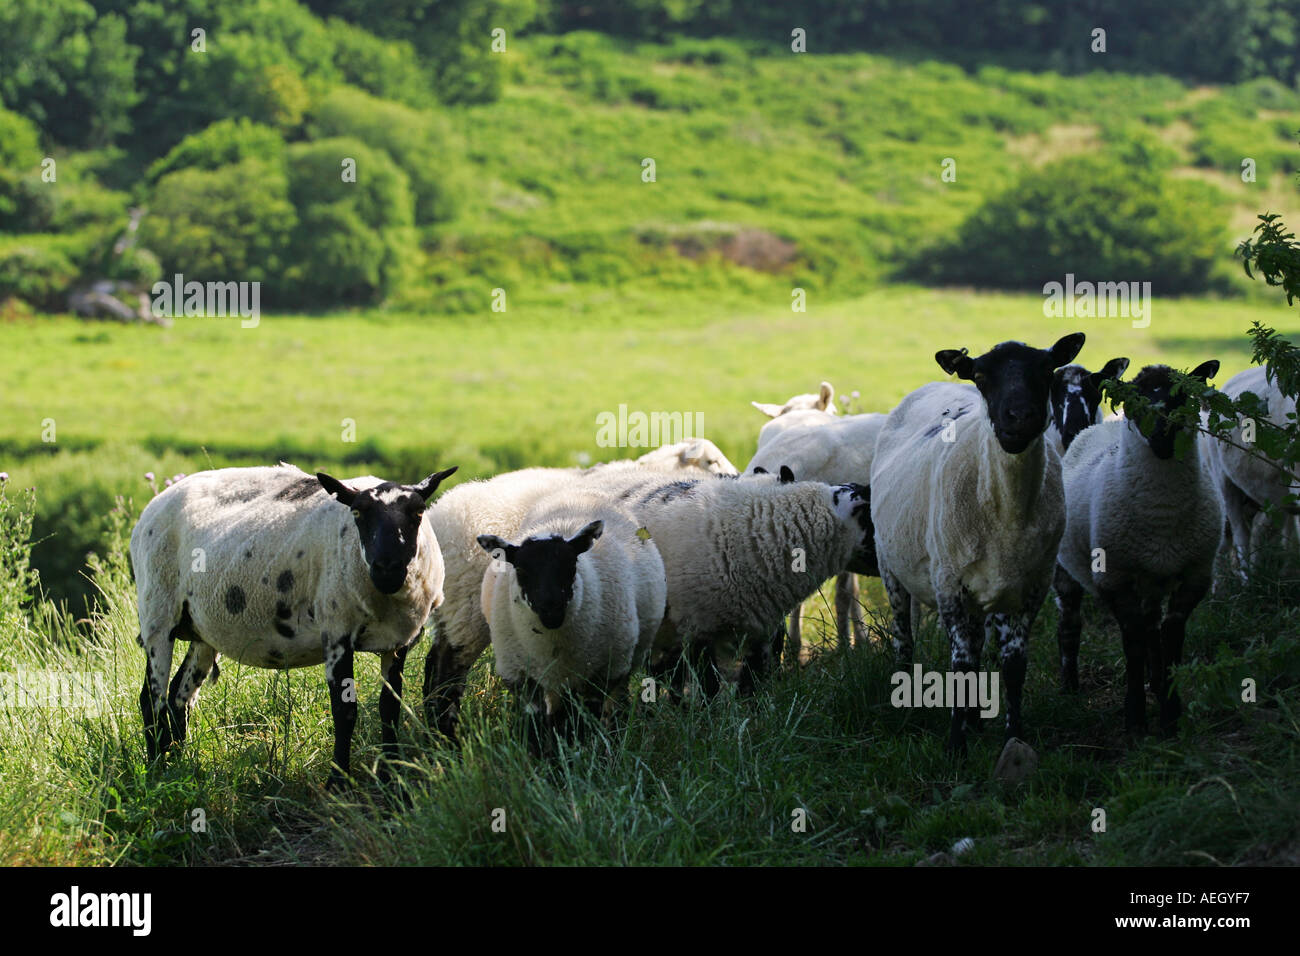 Un troupeau de curieux à la recherche des moutons blancs et noirs sur le côté d'un écrin de verdure au milieu de la vallée de gallois au Pays de Galles La Grande-Bretagne GB UK Banque D'Images